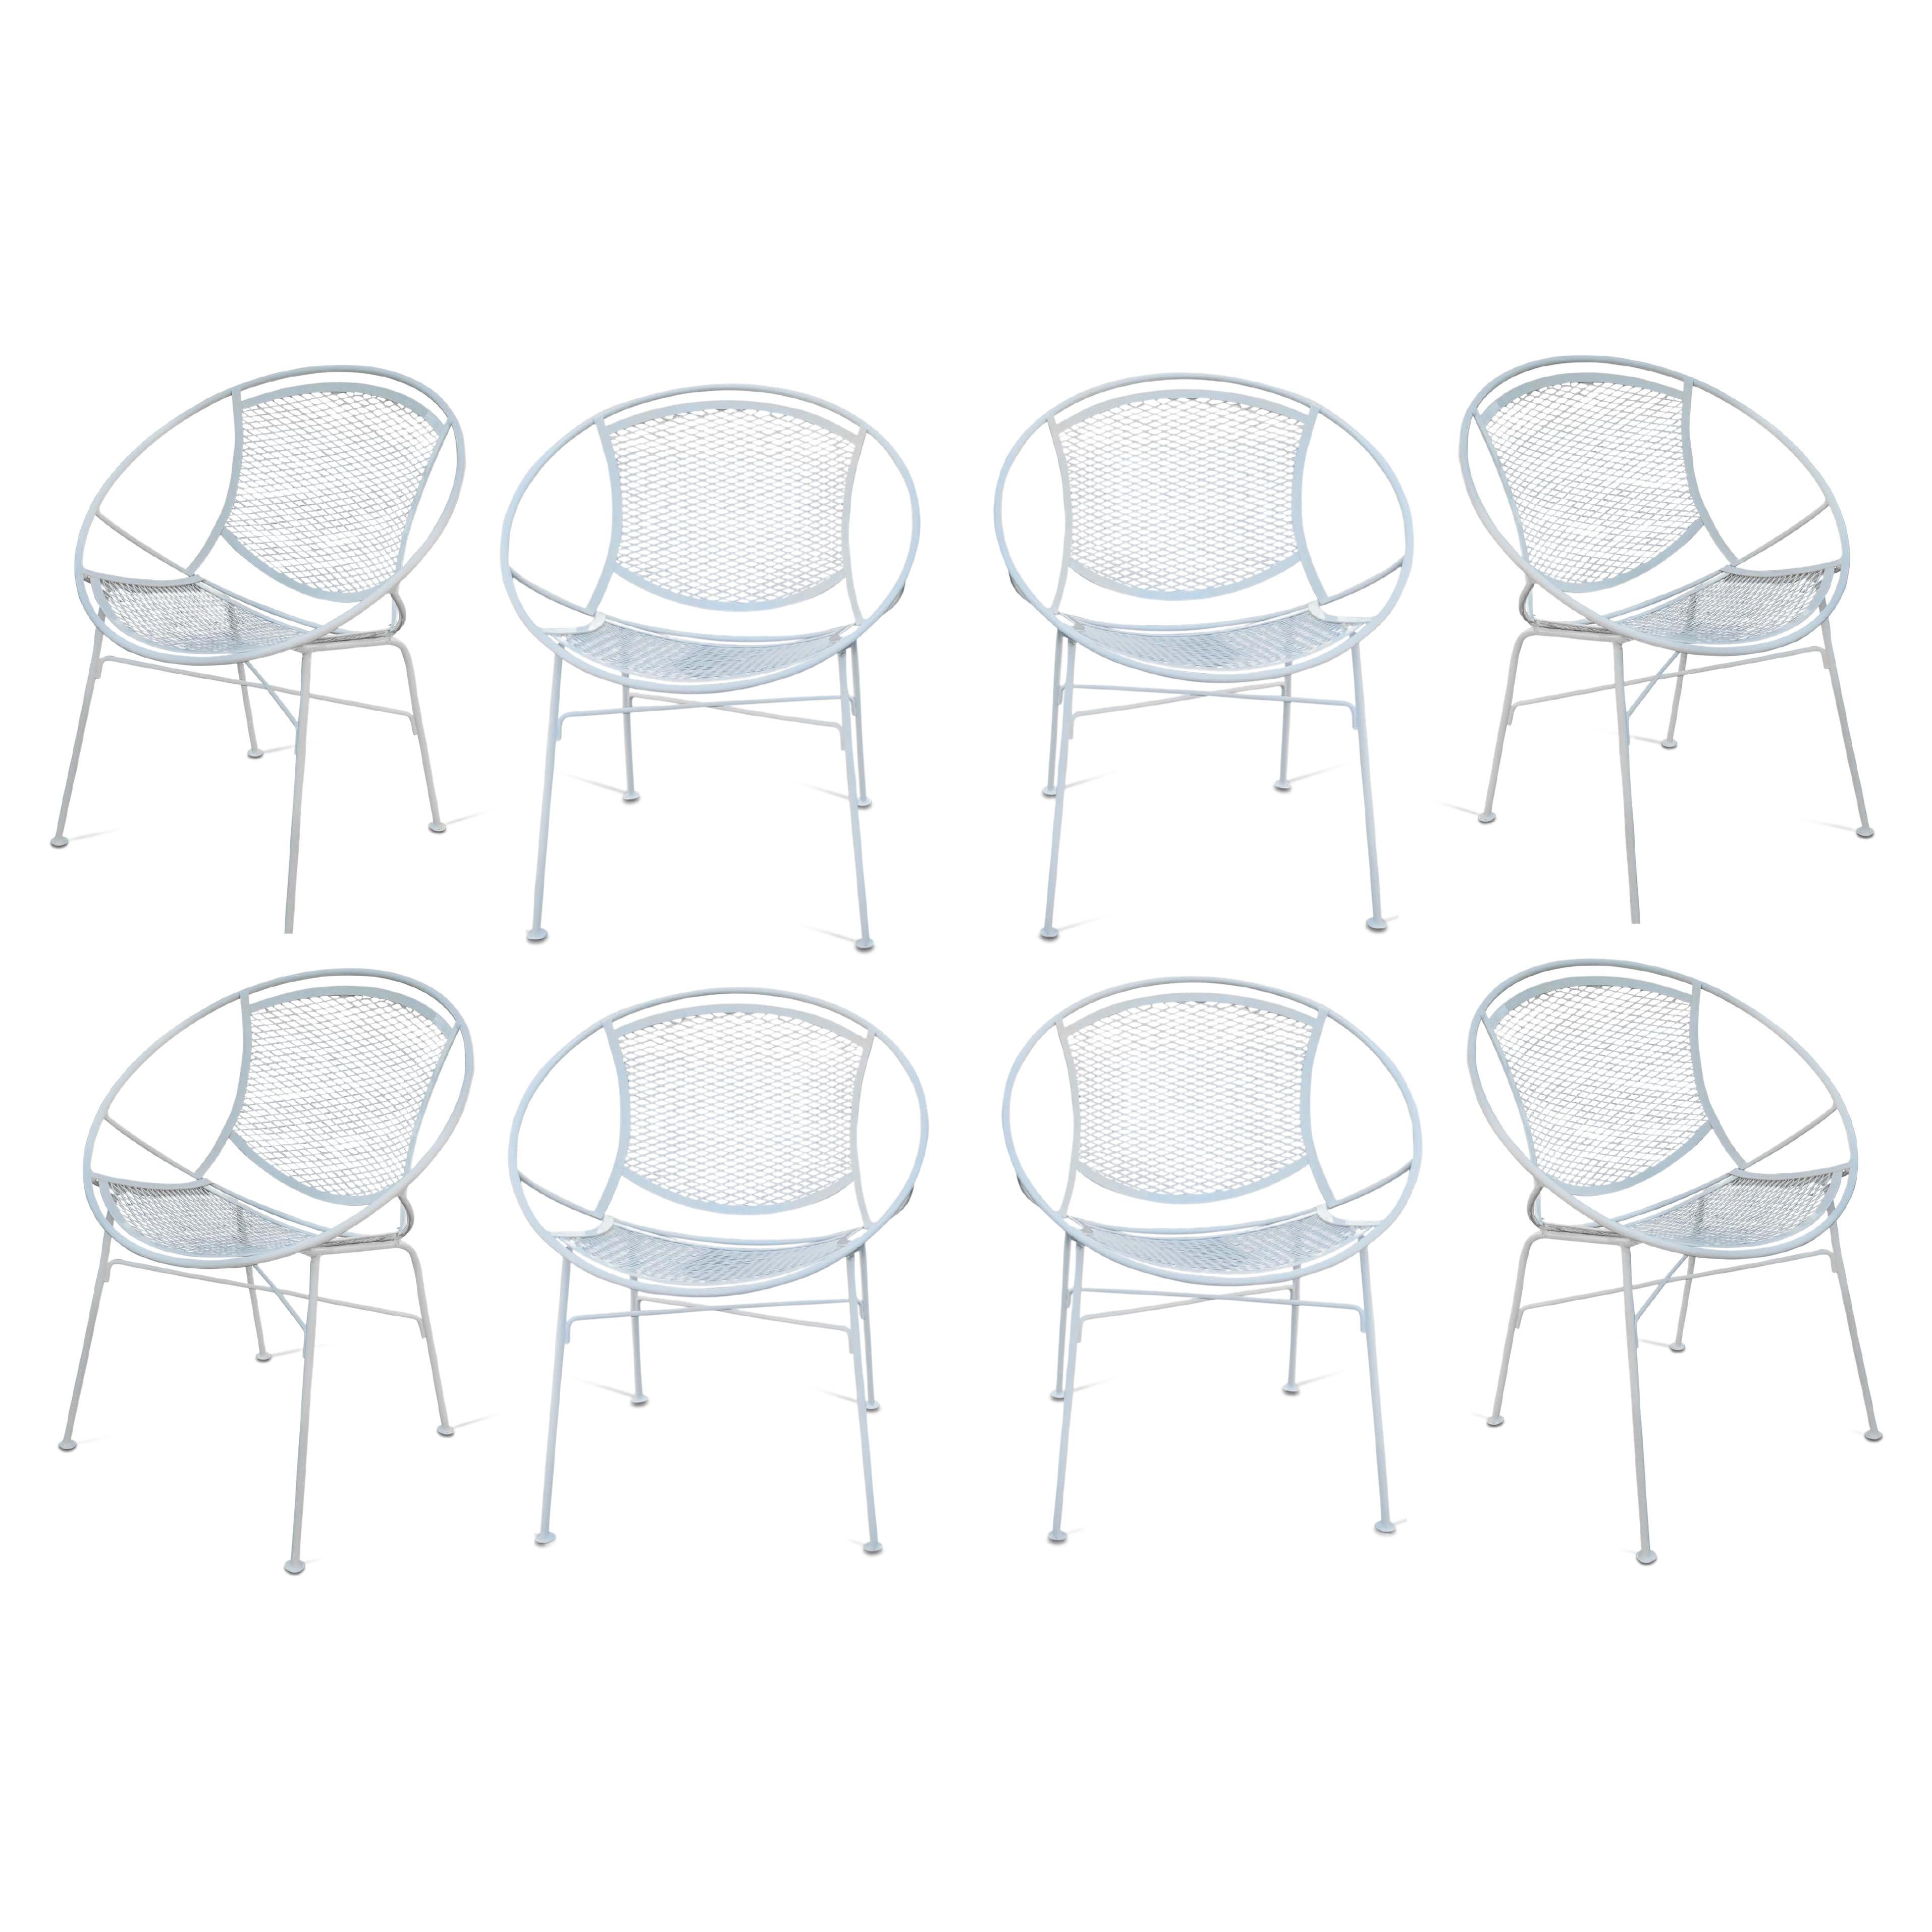 Ensemble de 8 chaises Tempestini restaurées en acier revêtu de poudre blanche Radar de Salterini